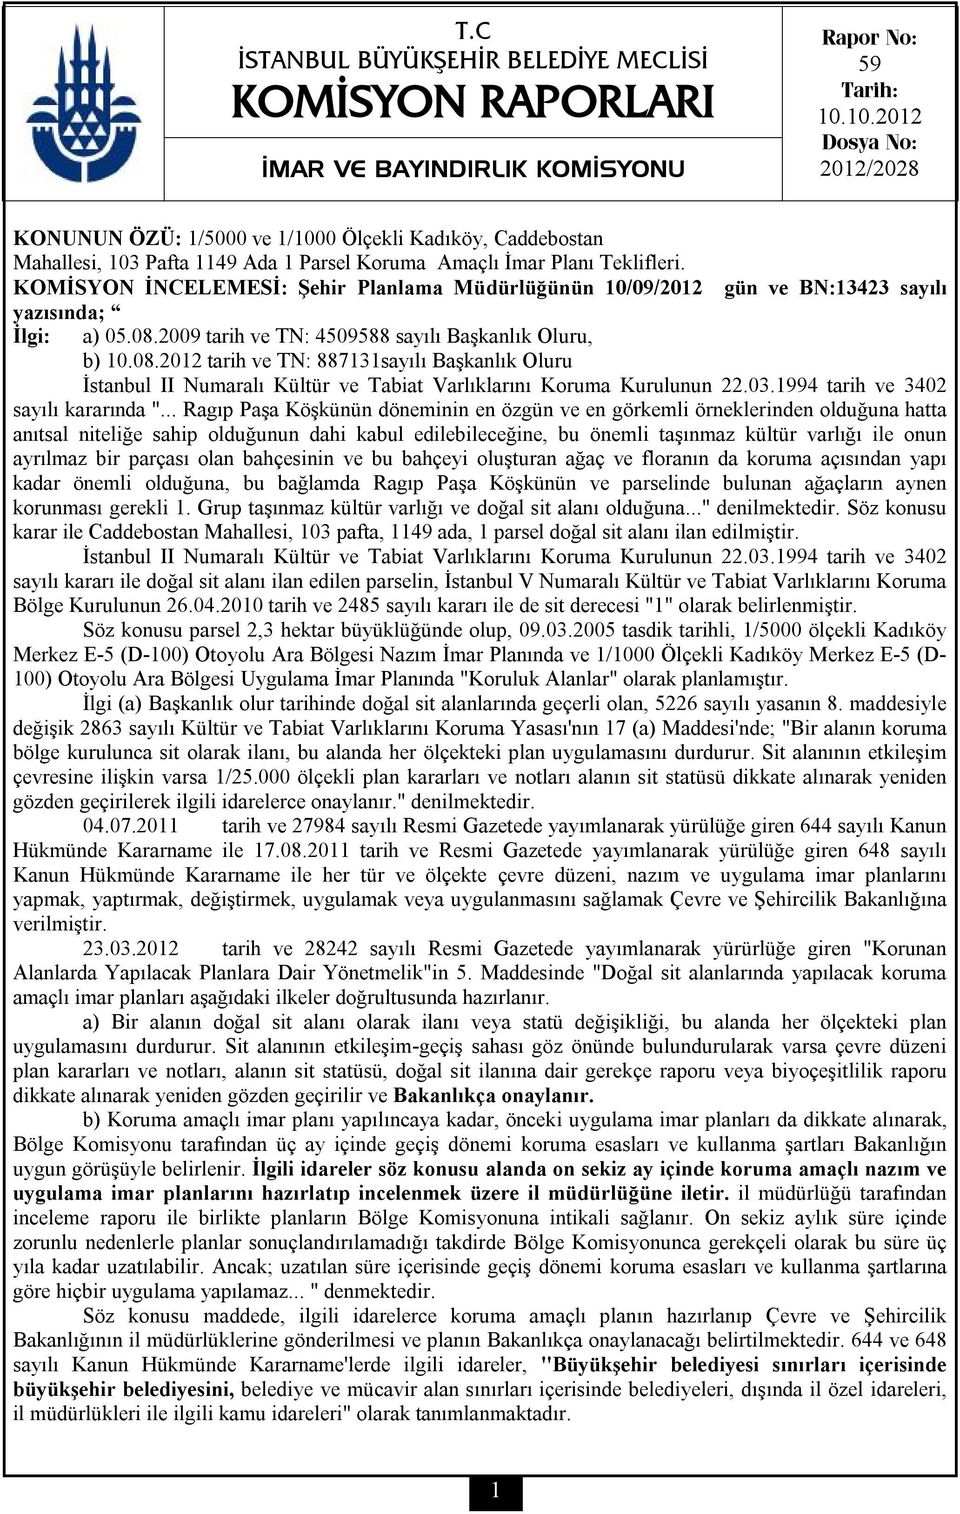 KOMİSYON İNCELEMESİ: Şehir Planlama Müdürlüğünün 10/09/2012 yazısında; İlgi: gün ve BN:13423 sayılı a) 05.08.